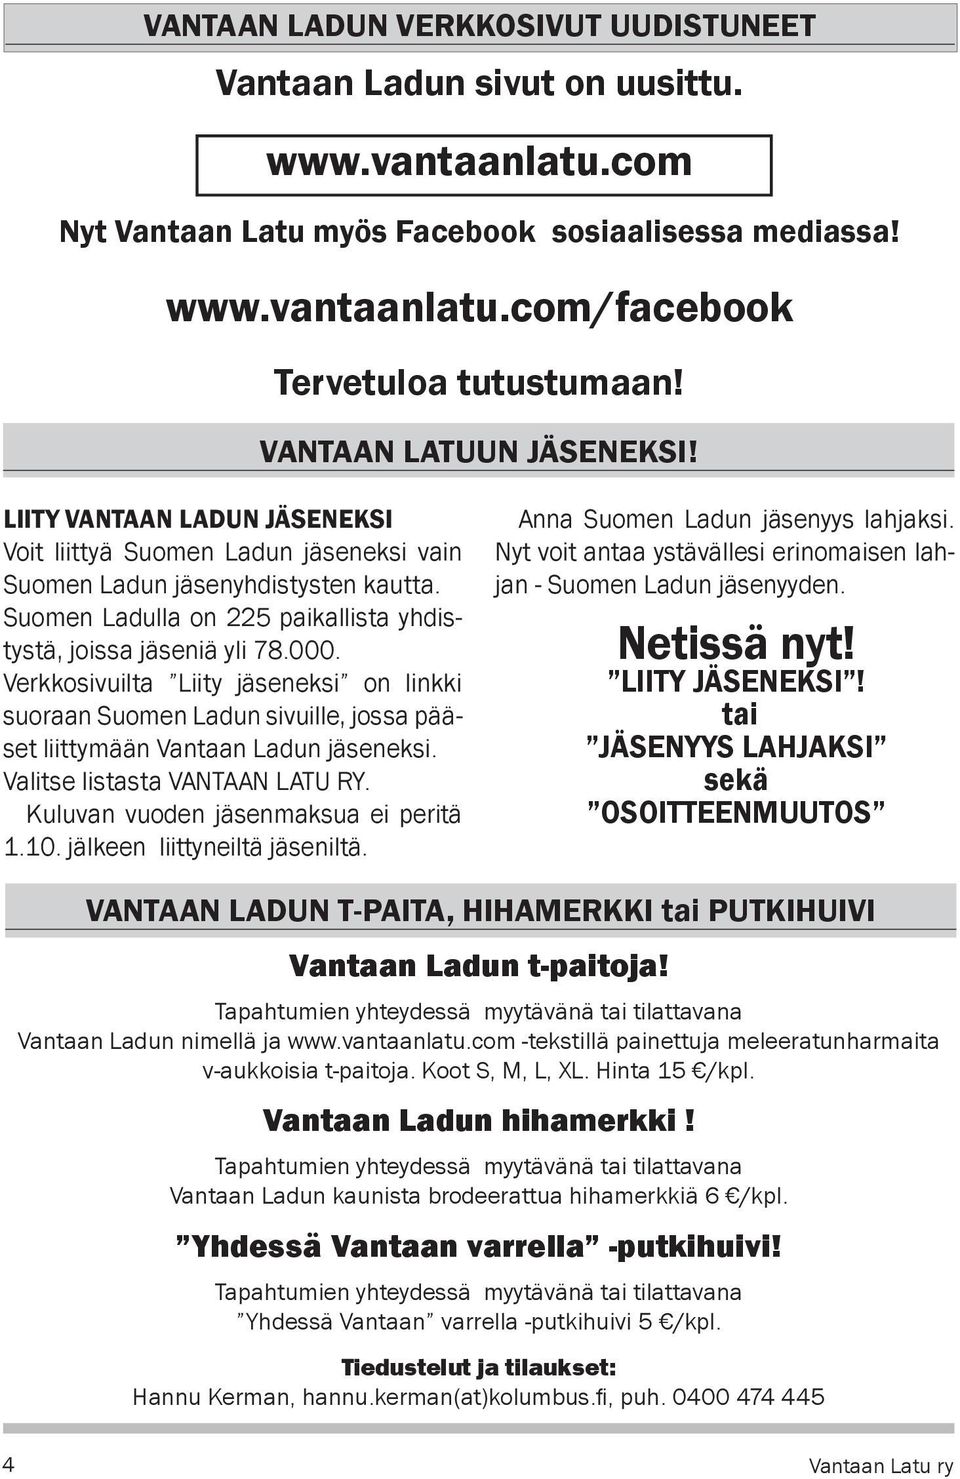 Suomen Ladulla on 225 paikallista yhdistystä, joissa jäseniä yli 78.000. Verkkosivuilta Liity jäseneksi on linkki suoraan Suomen Ladun sivuille, jossa pääset liittymään Vantaan Ladun jäseneksi.